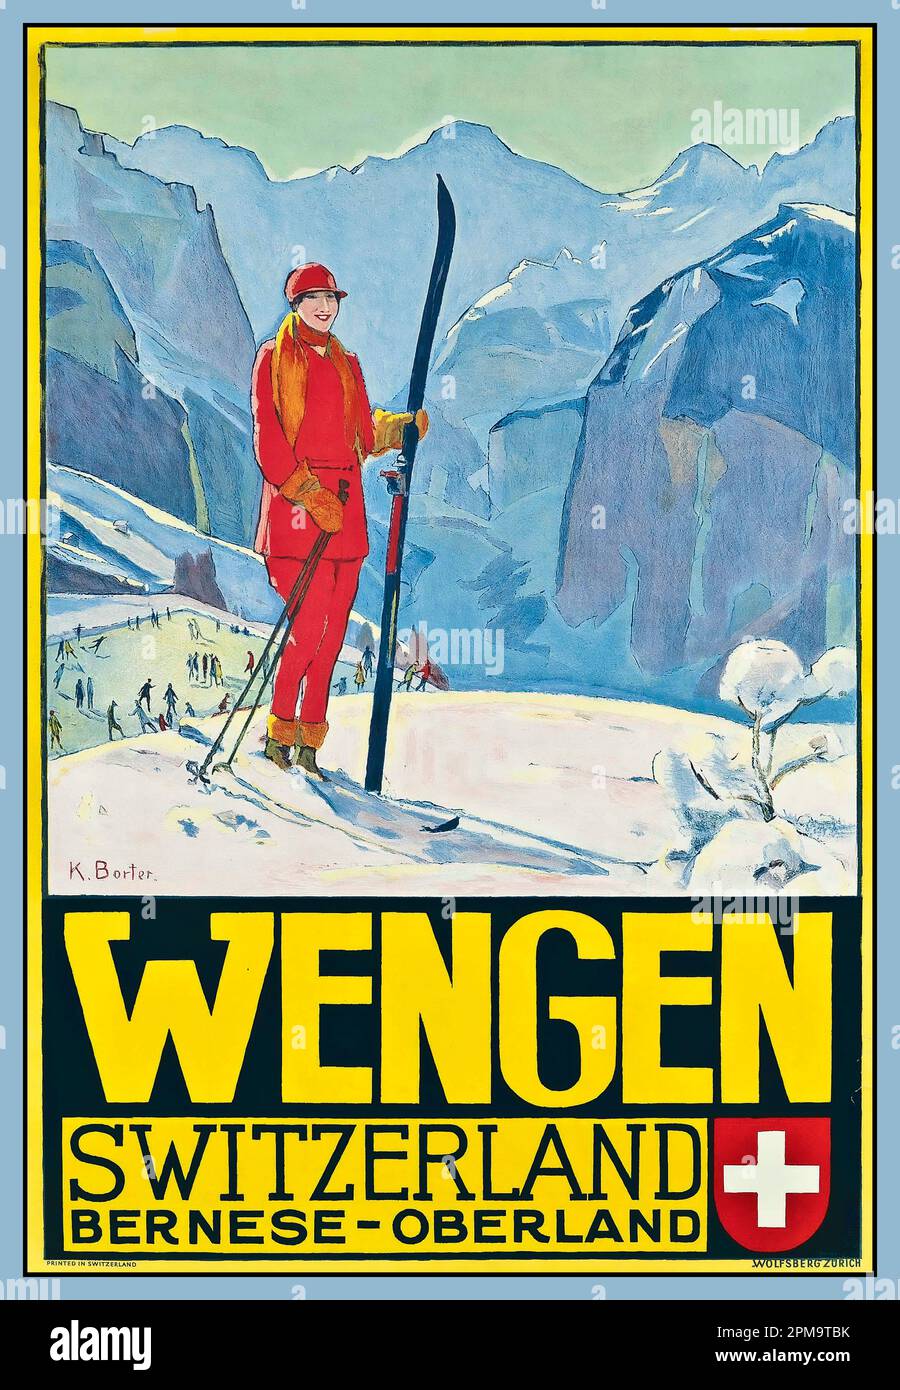 Vintage WENGEN SKI Travel Poster par Klara Borter vers 1933 Oberland bernois Suisse suisse Banque D'Images